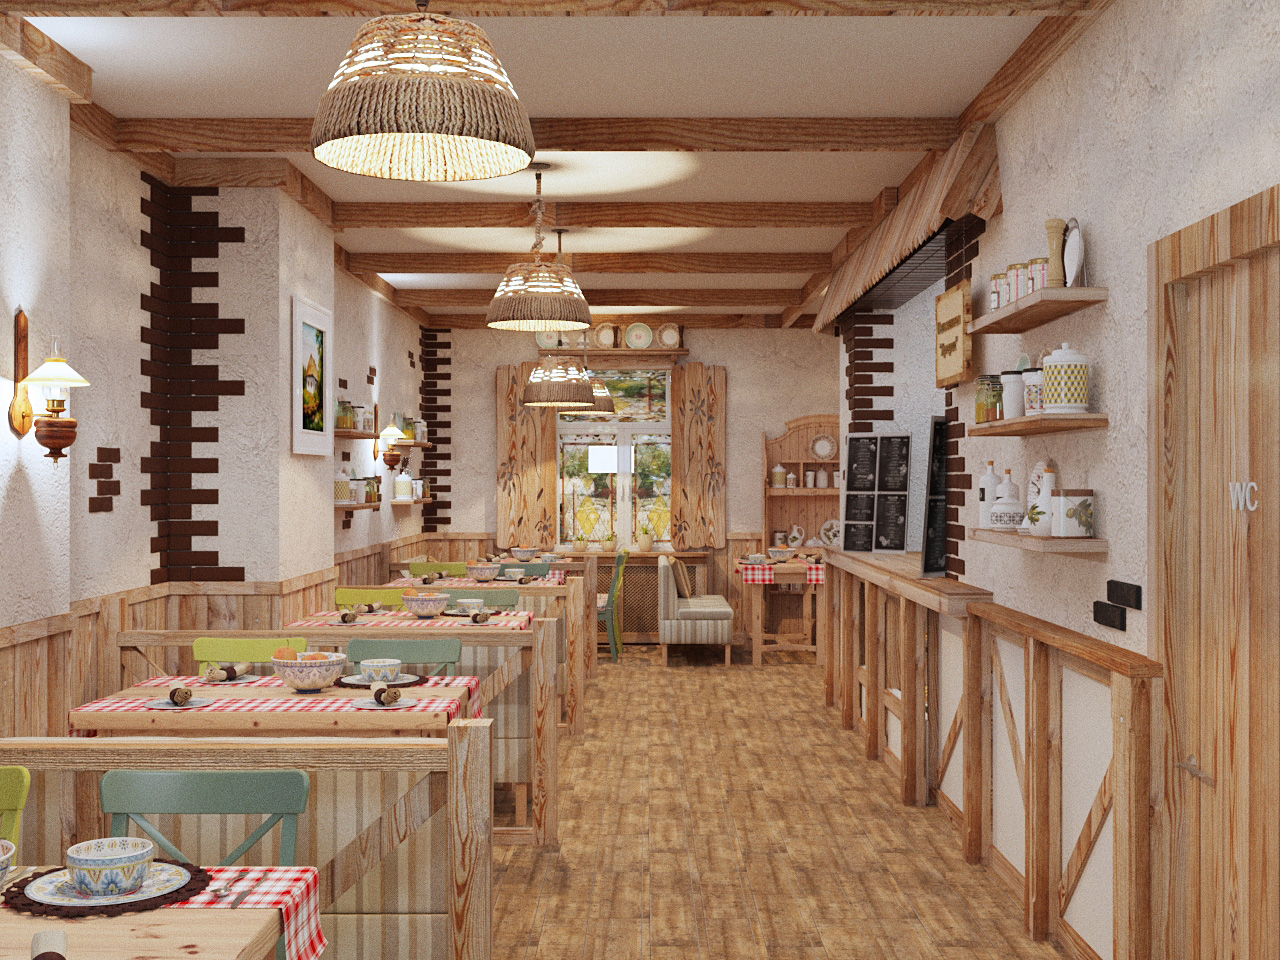 Разработка концепции проекта кафе-пельменной «Самовар» «под ключ», Москва